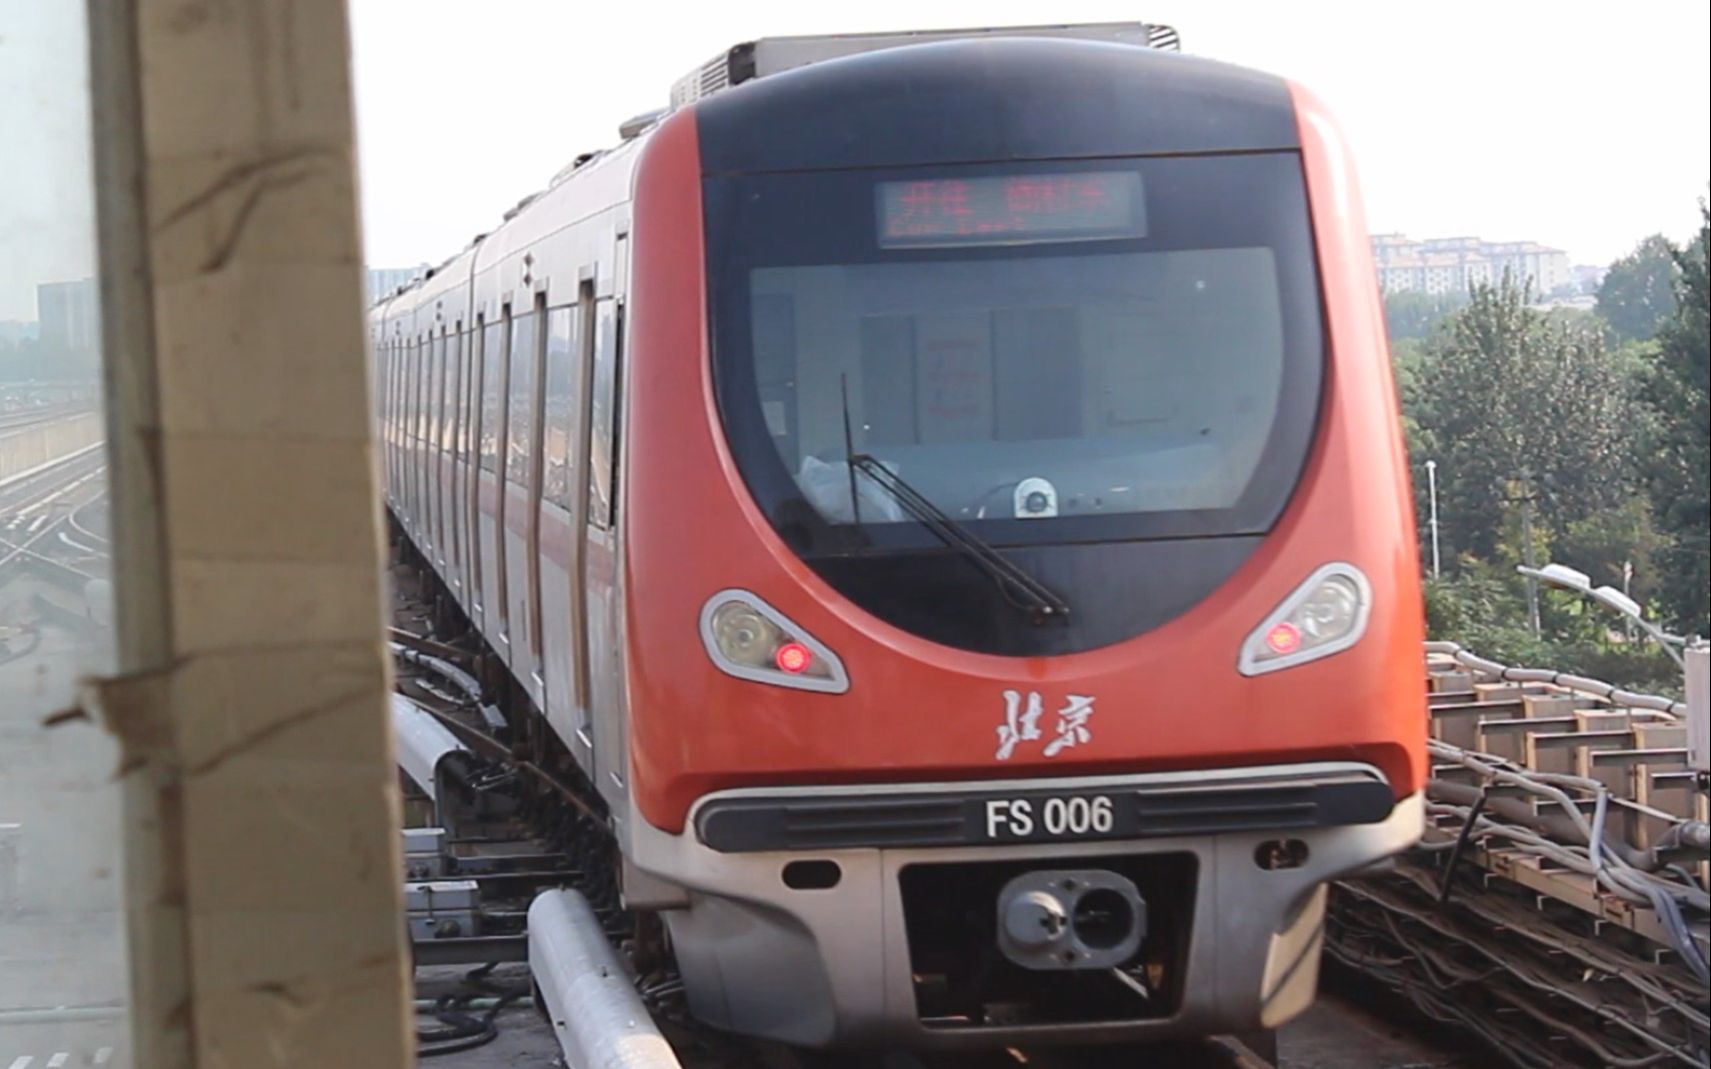 【北京地铁】房山线唯二两组带北京标的车中的fs006车出篱笆房站